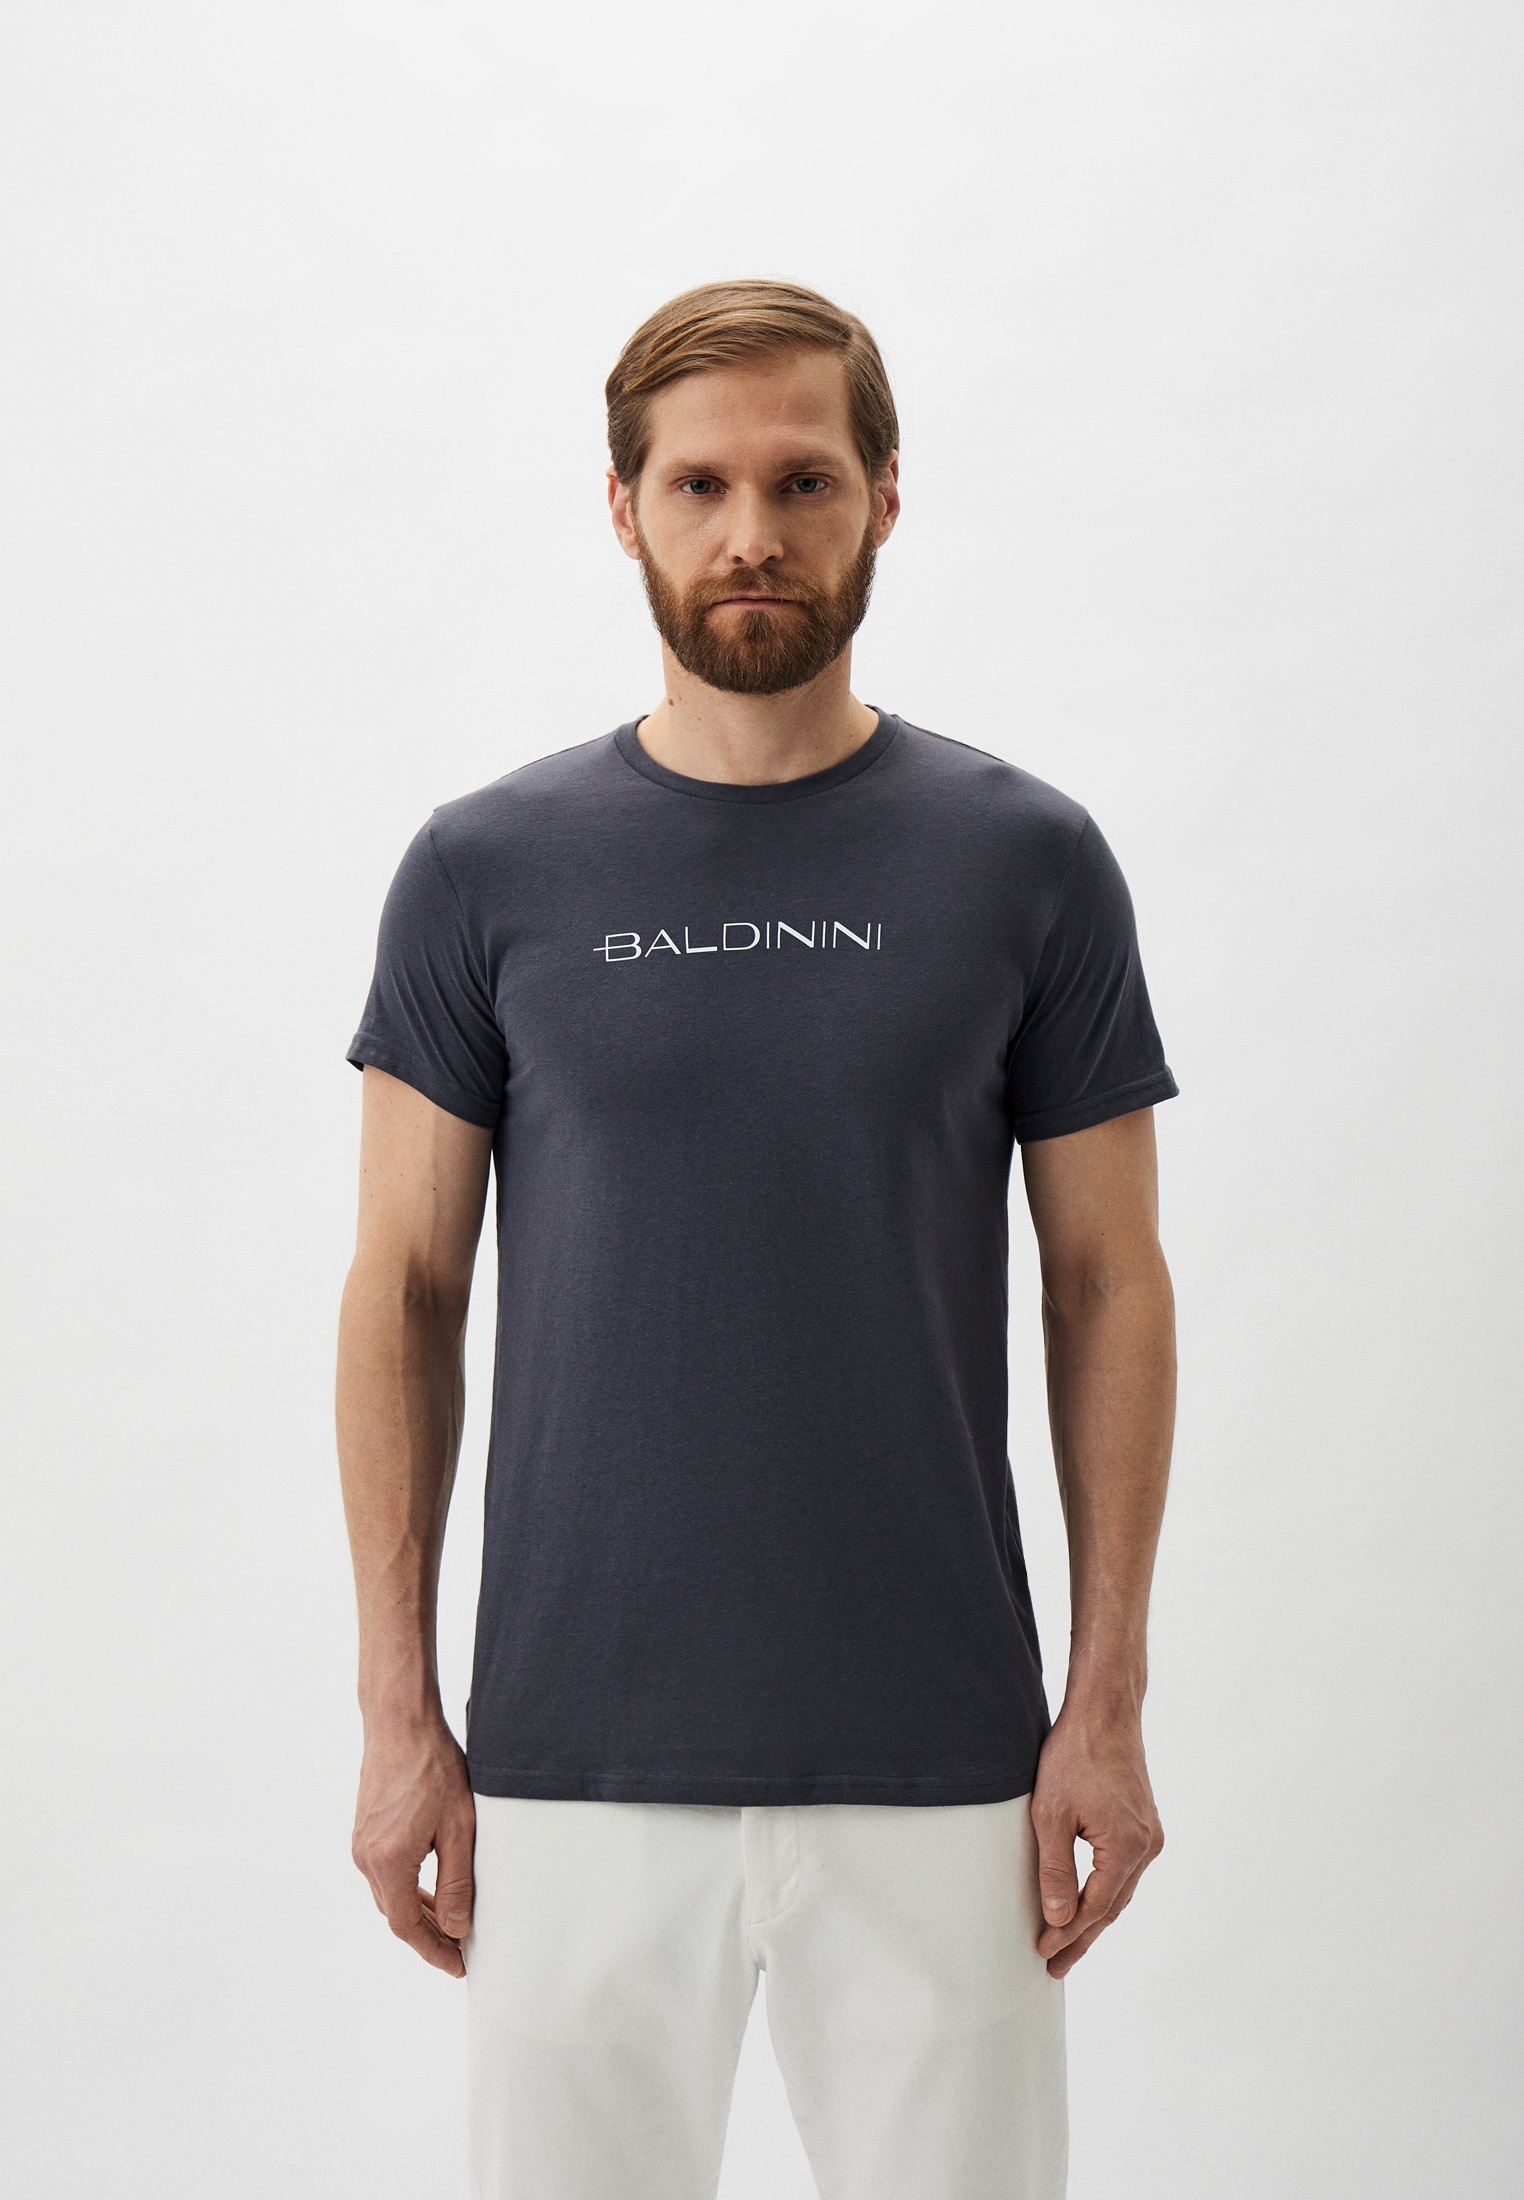 Мужская футболка Baldinini (Балдинини) B-OLM-M004: изображение 1